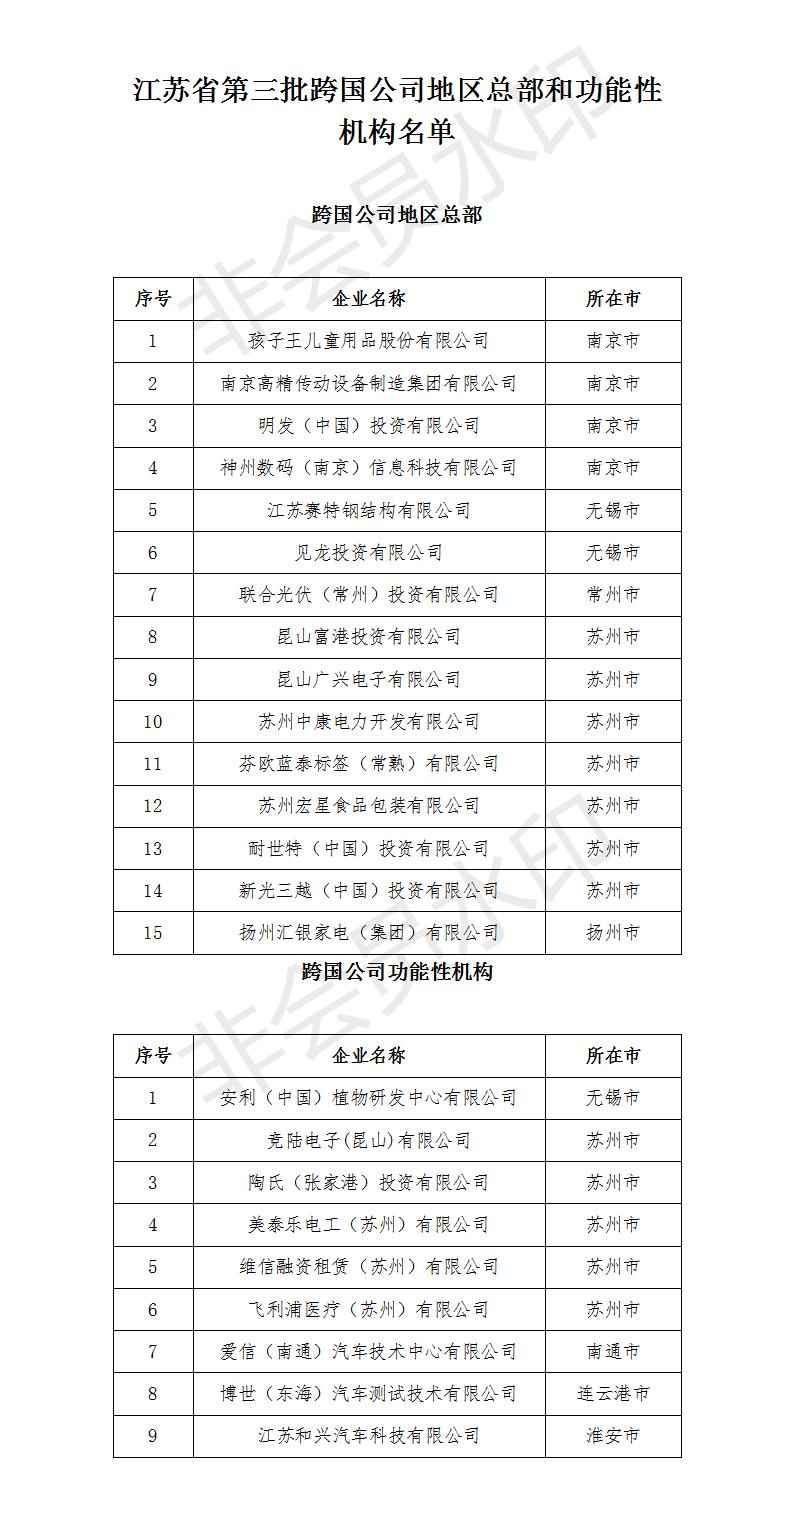 江苏省第三批跨国公司地区总部和功能性机构认定名单